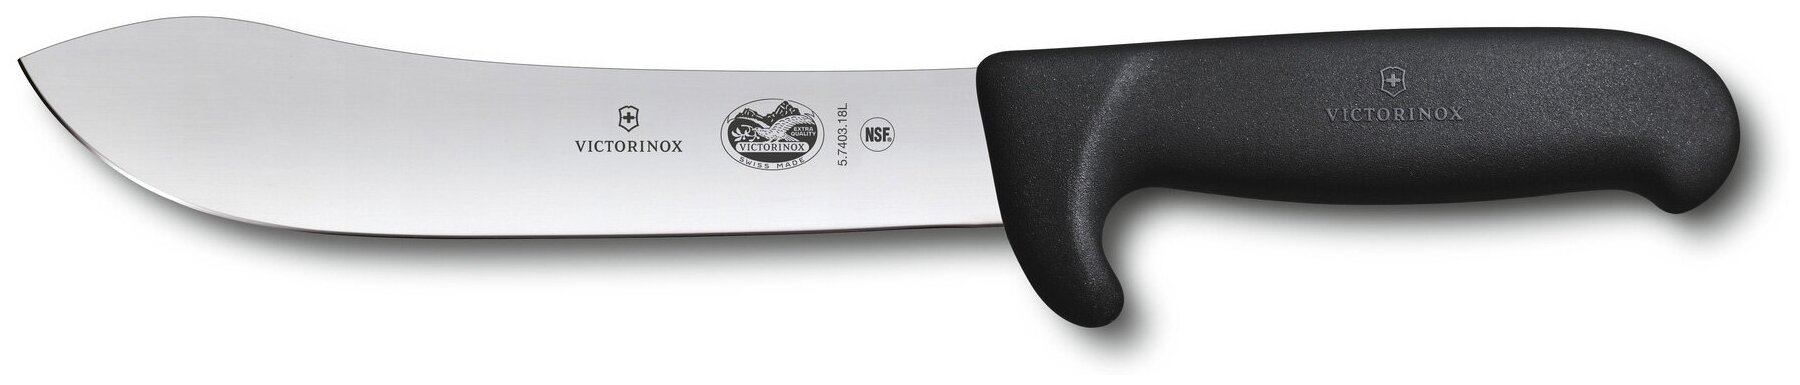 Нож Victorinox Butchers Safety Nose черный, для мяса, сталь, разделочный, лезвие 180мм, прямая заточка (5.7403.18L)